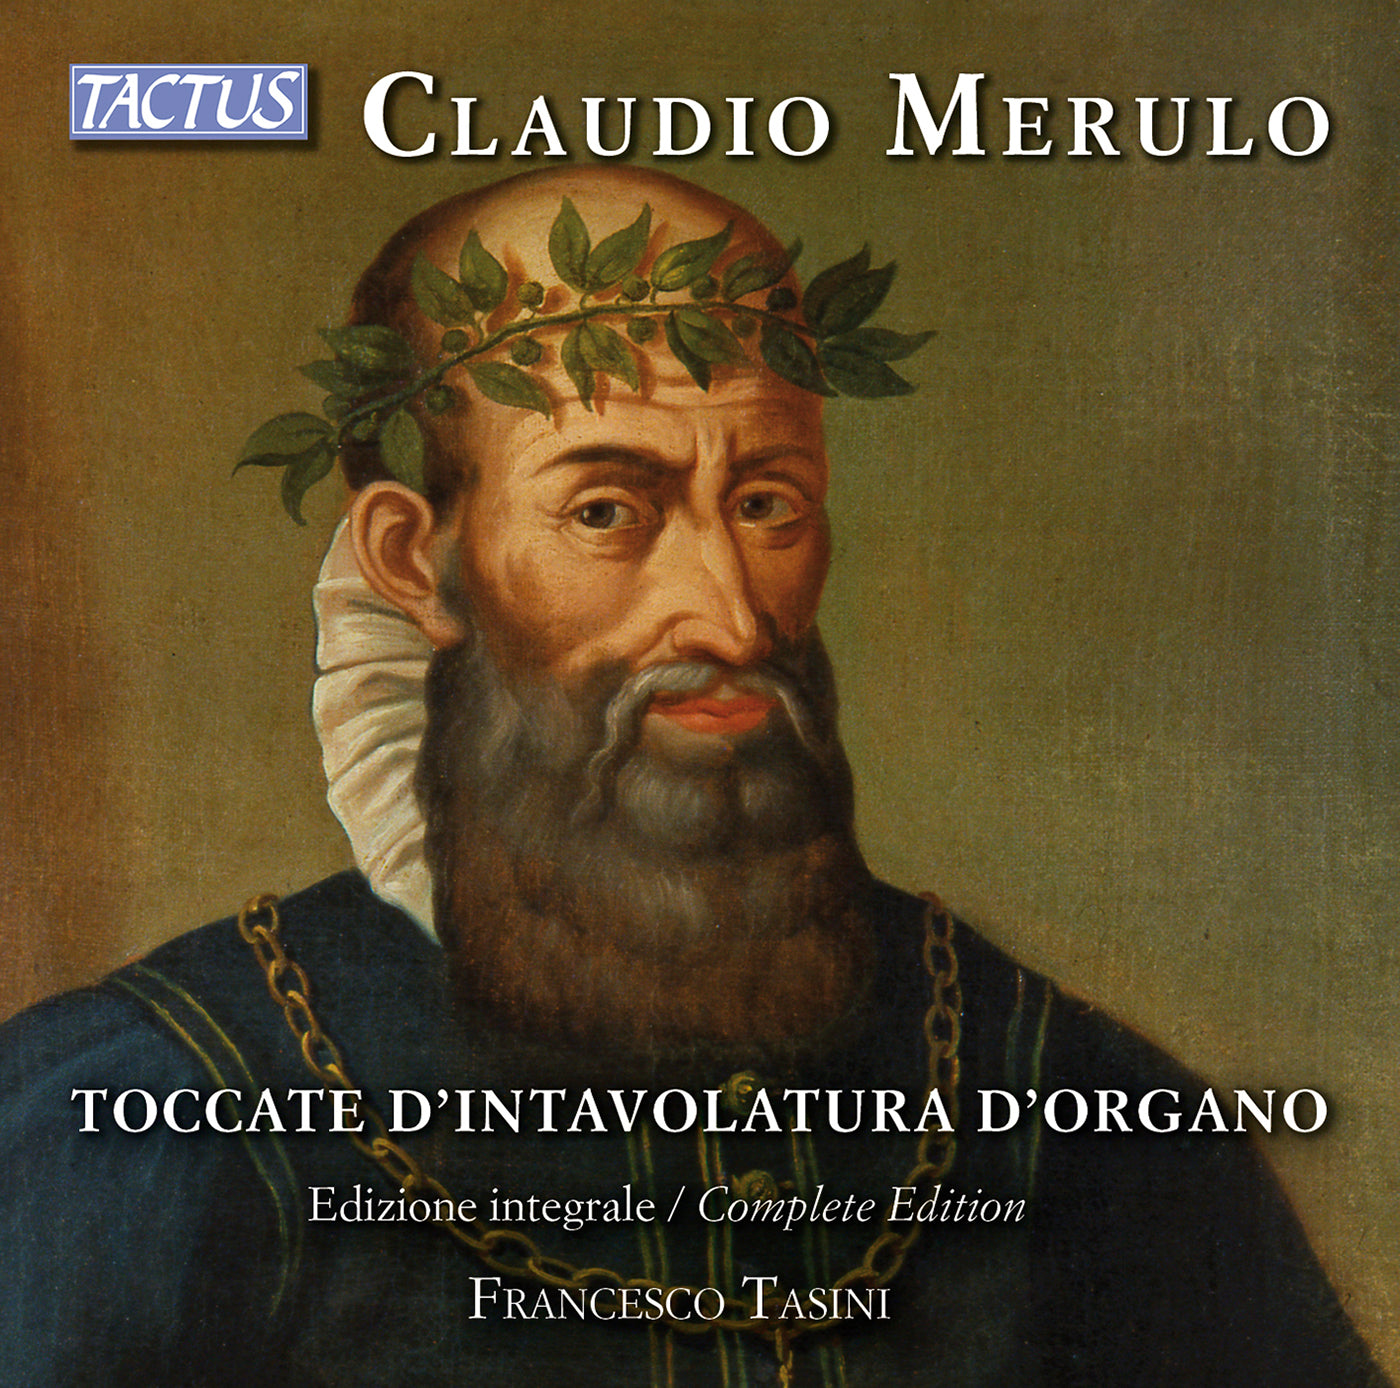 Claudio Merulo: Toccate D'intavolatura D'organo, Complete Edition